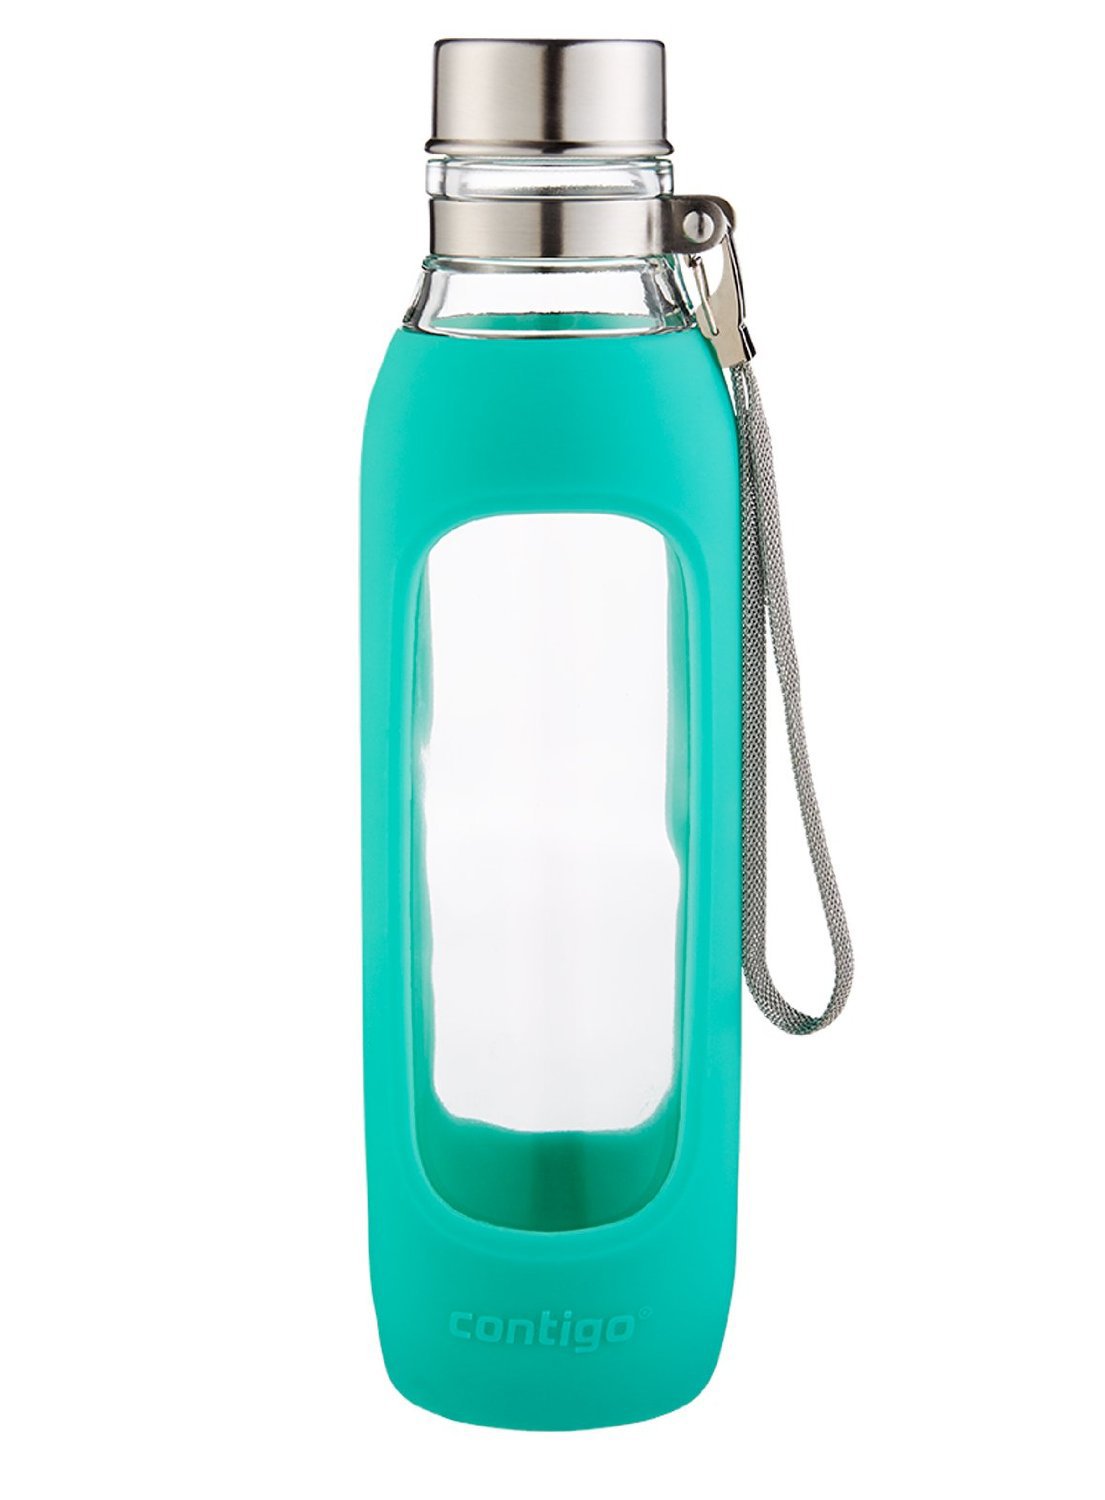 Contigo Purity Glass Water Bottle - Ourland Outdoor